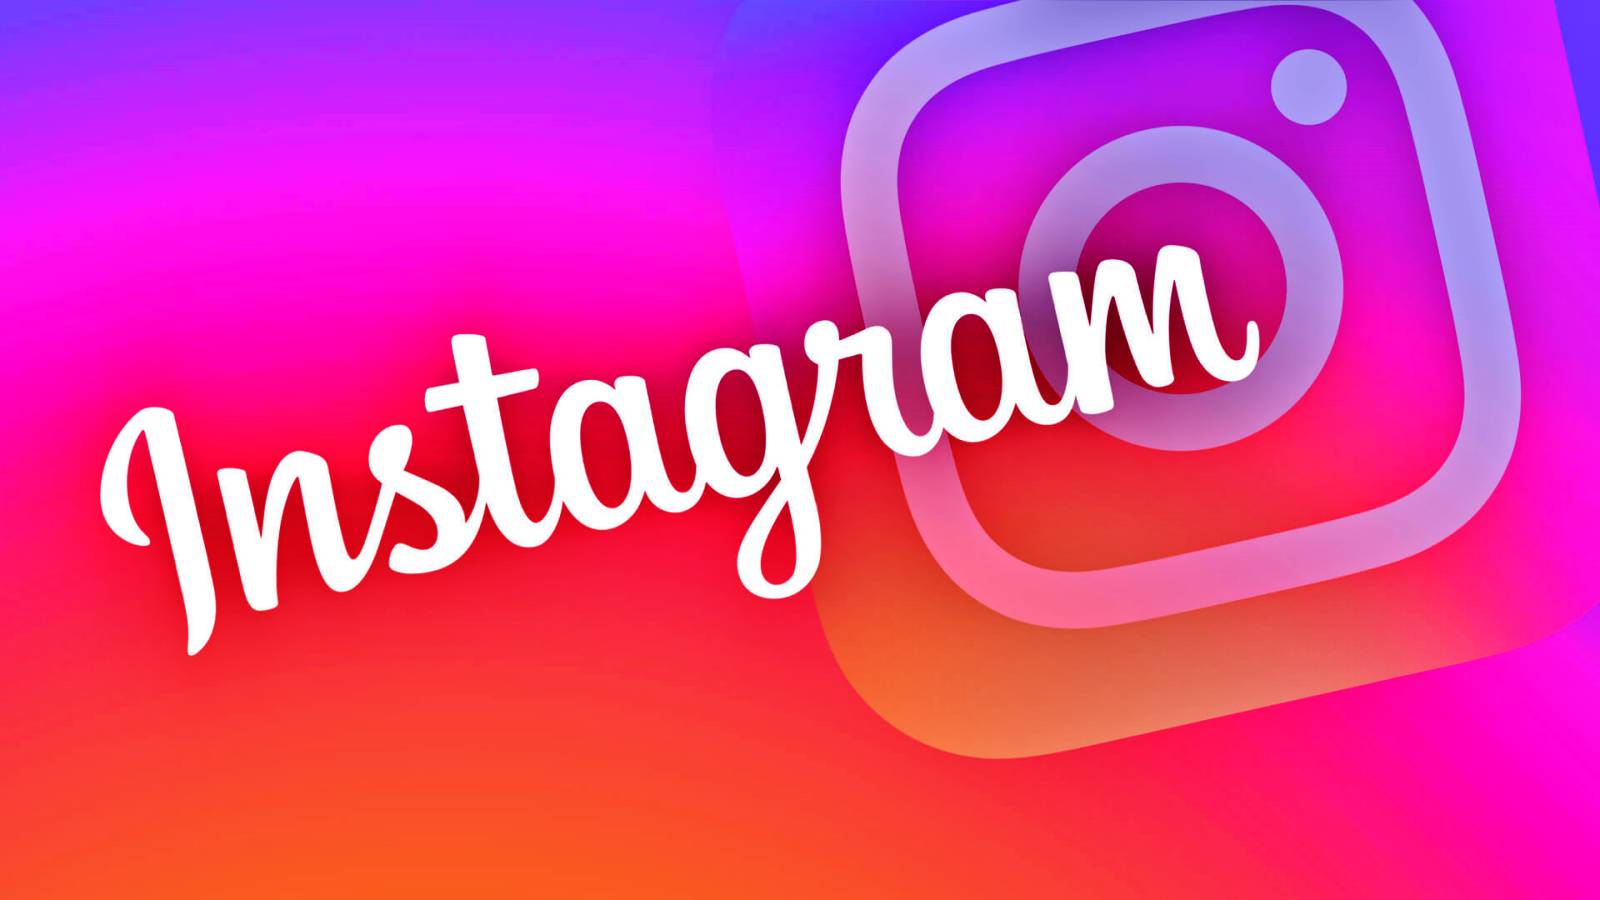 L'aggiornamento Instagram per iPhone e Android arriva oggi con novità